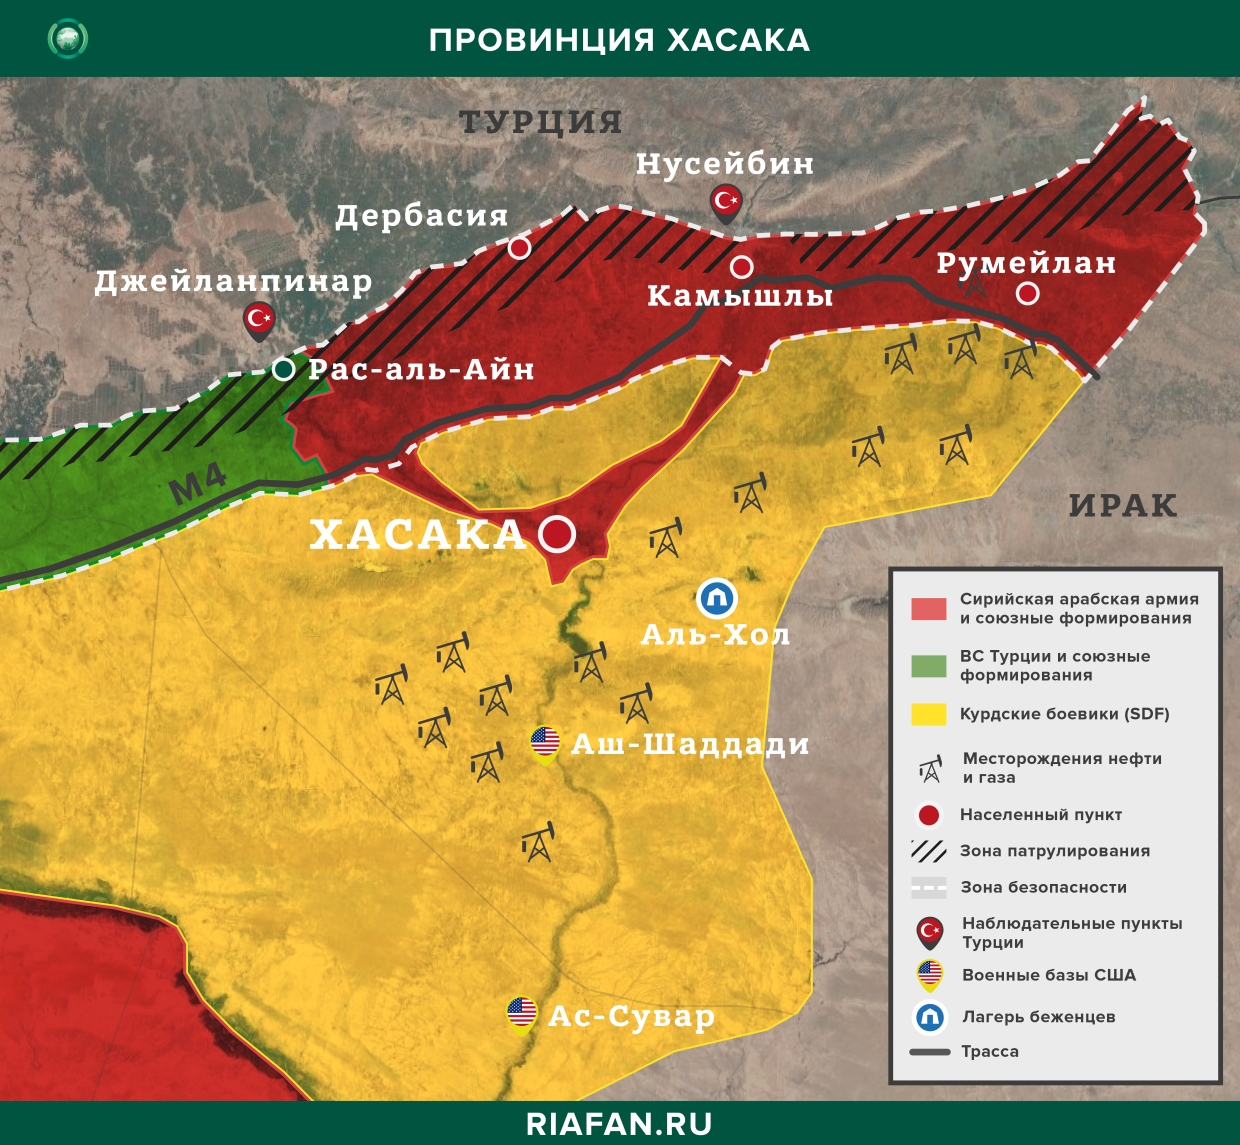 Resultados diarios de Siria para 21 Julio 06.00: redadas de militantes kurdos en Deir ez-Zor, en Alepo neutralizado 3 ES terrorista